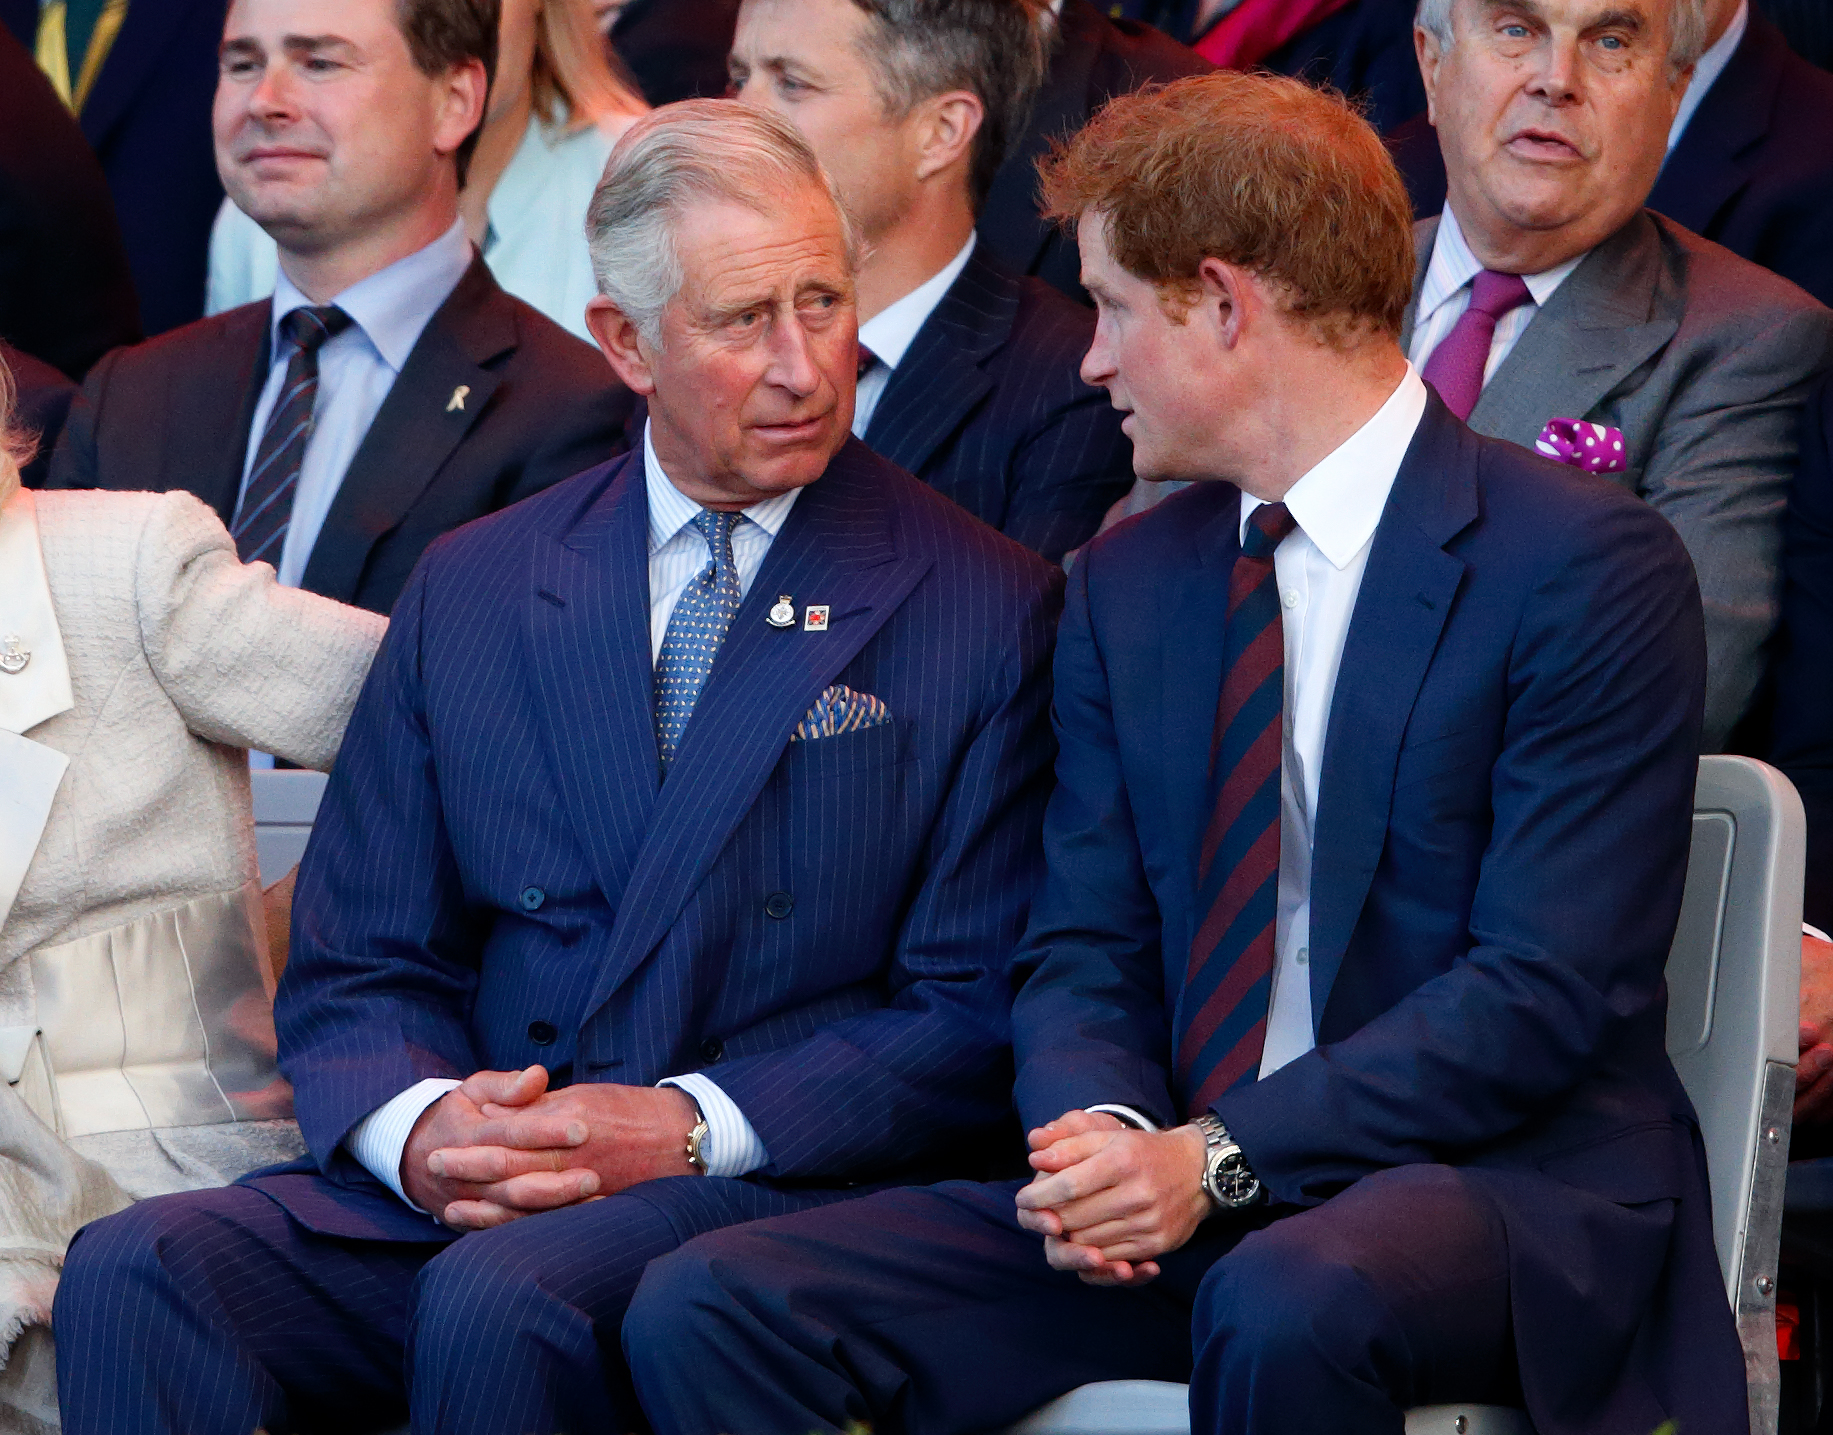 Le roi Charles III et le prince Harry en pleine conversation lors de la cérémonie d'ouverture des Invictus Games à Londres, en Angleterre, le 10 septembre 2014 | Source : Getty Images